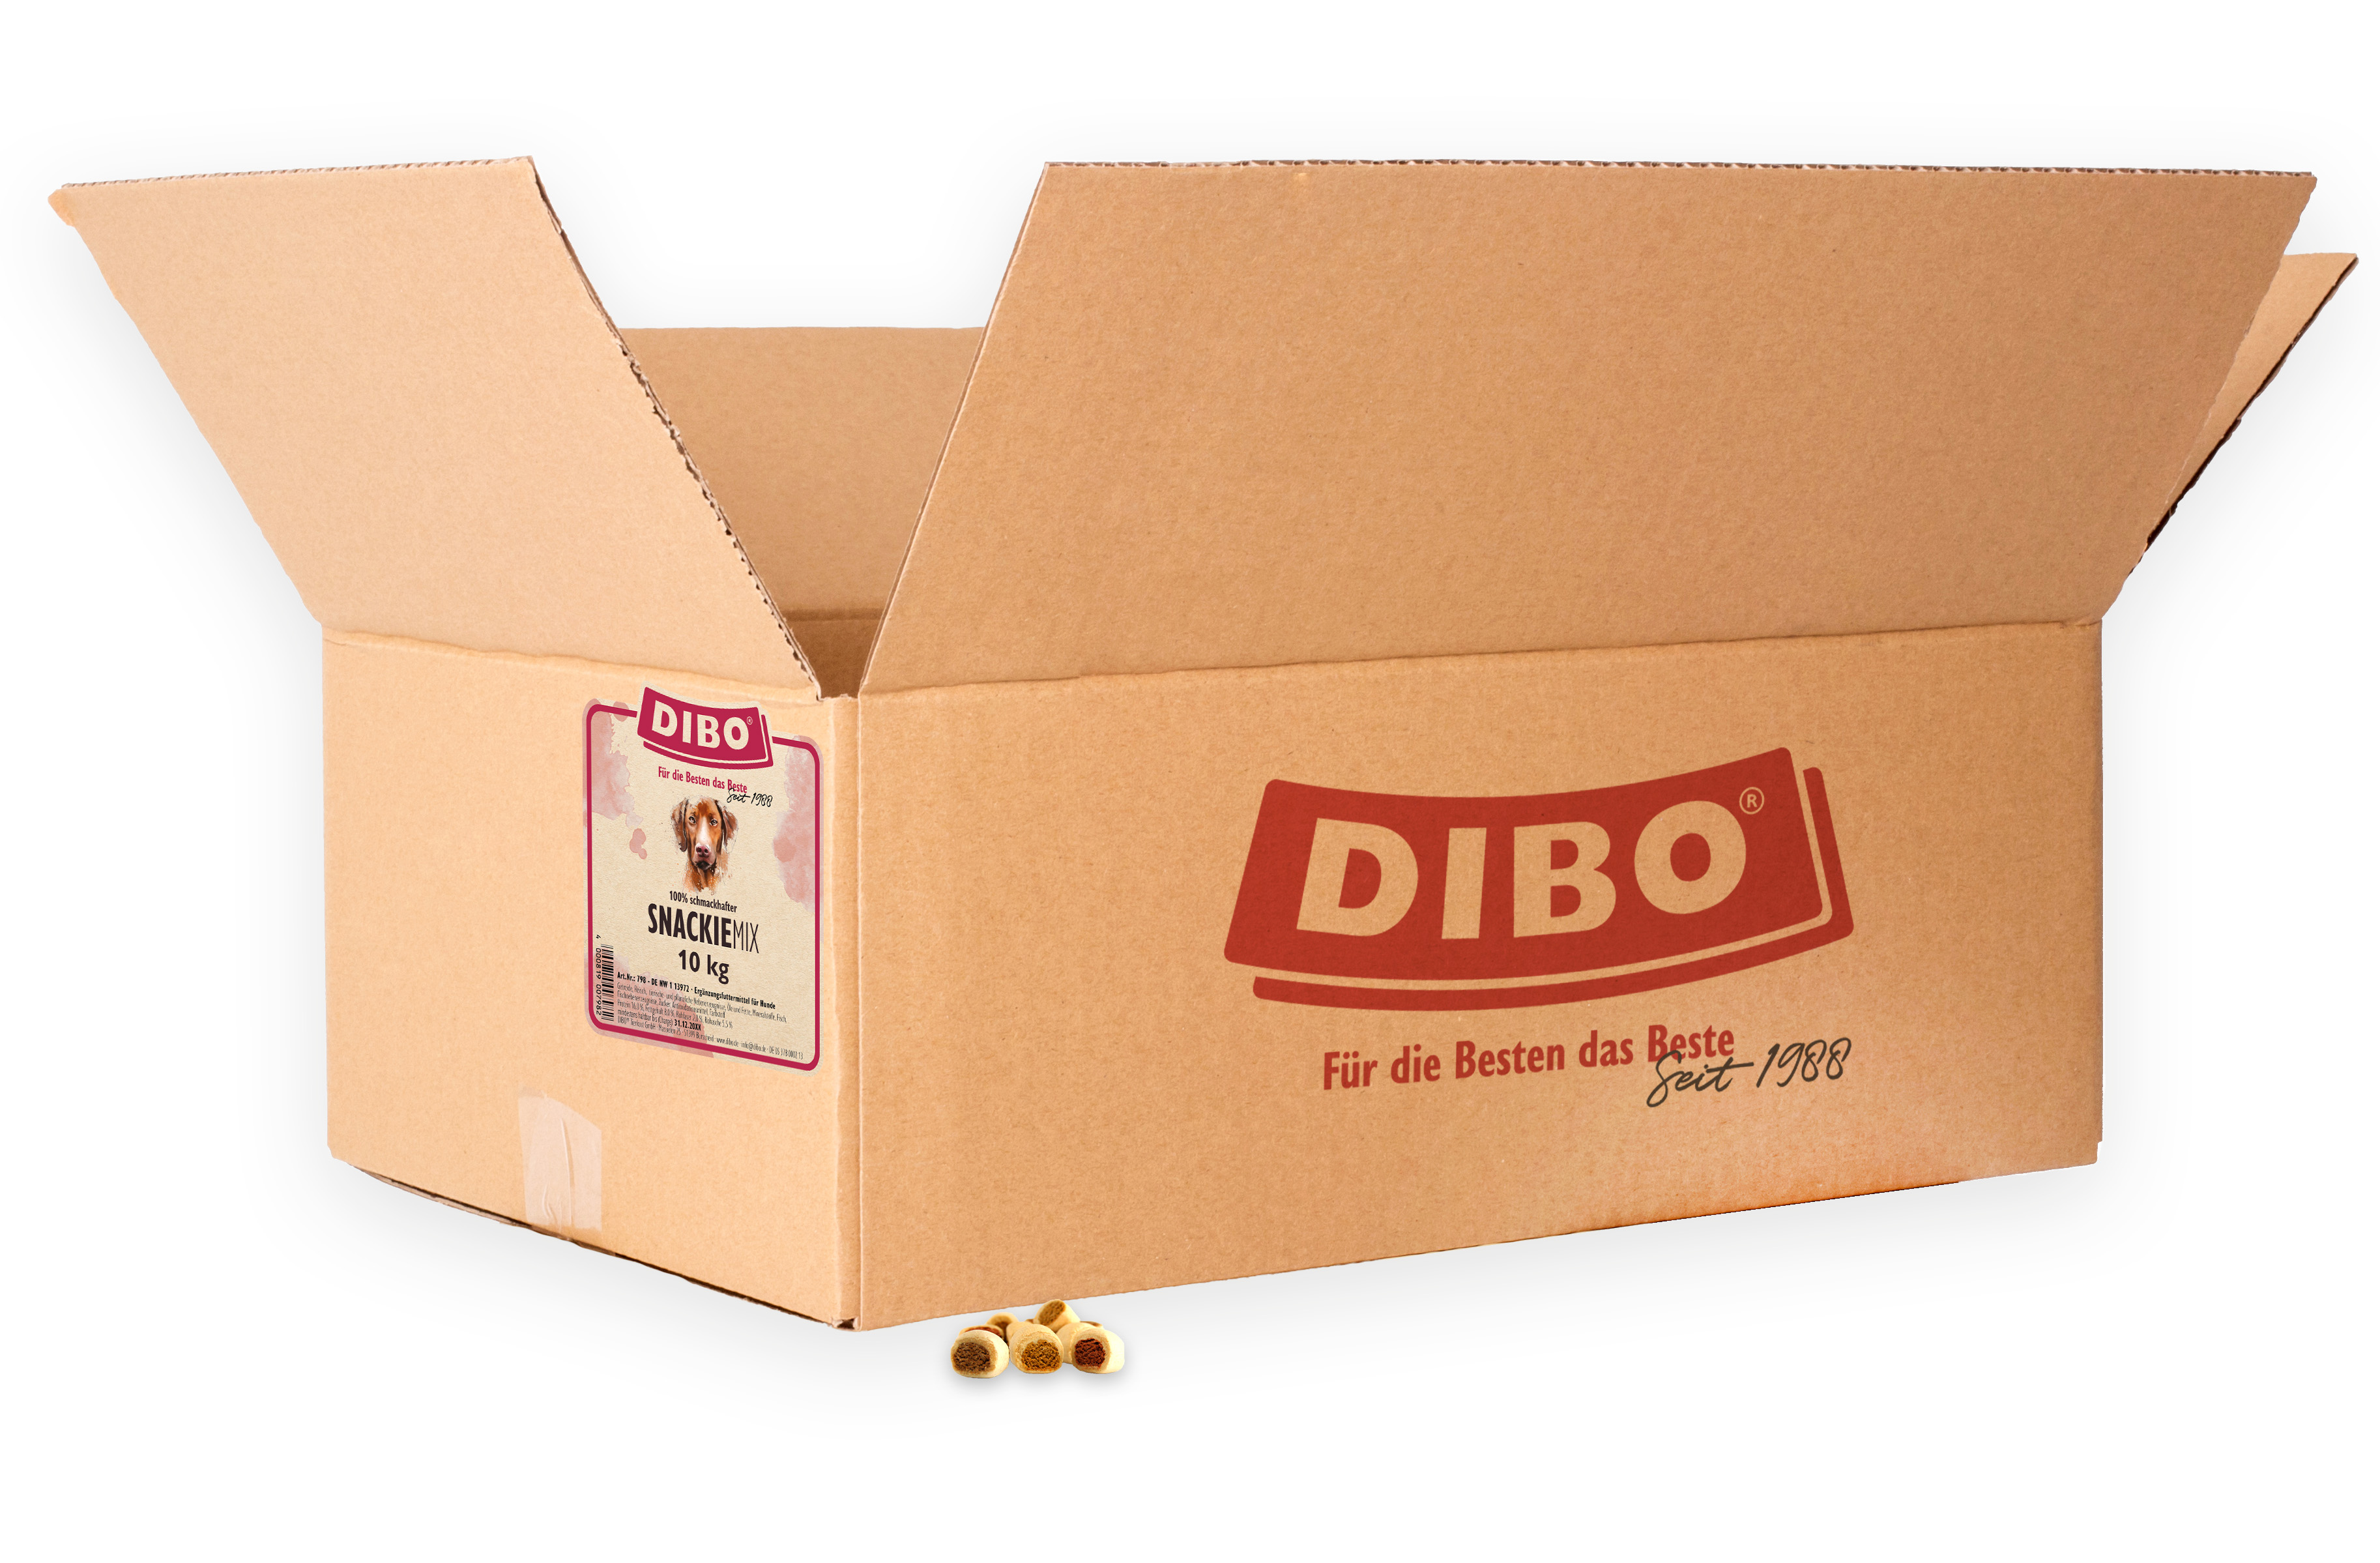 DIBO Snackie-Mix, 10kg-Karton